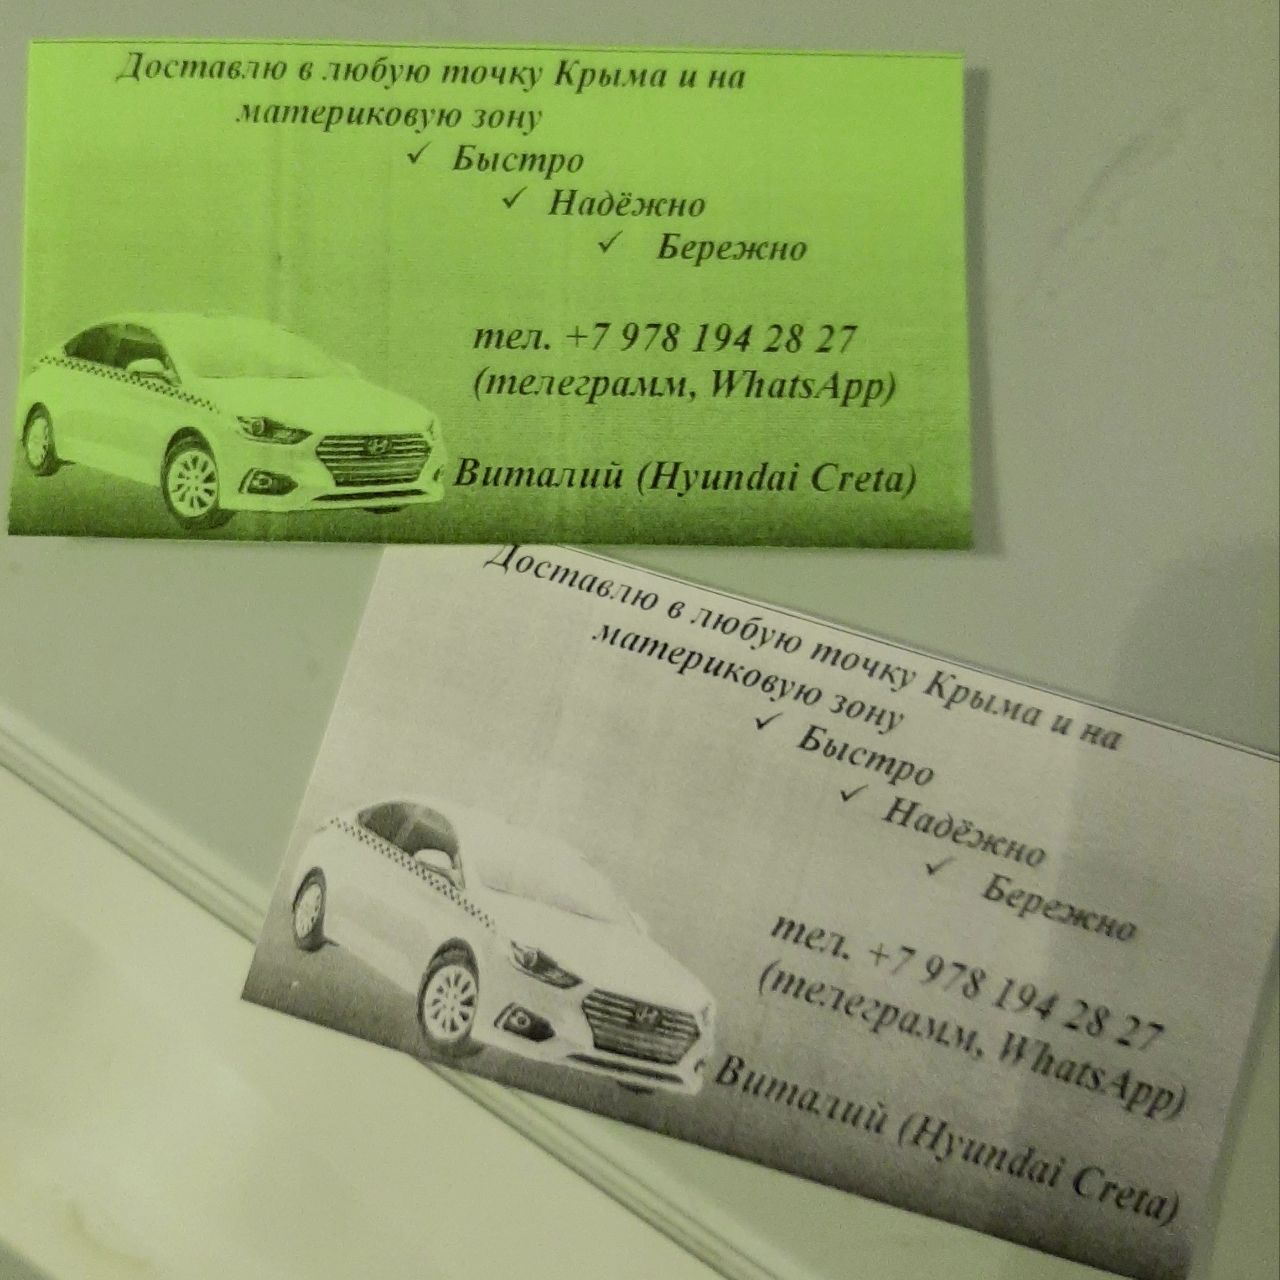 Услуги такси в Крыму недорого - фотография